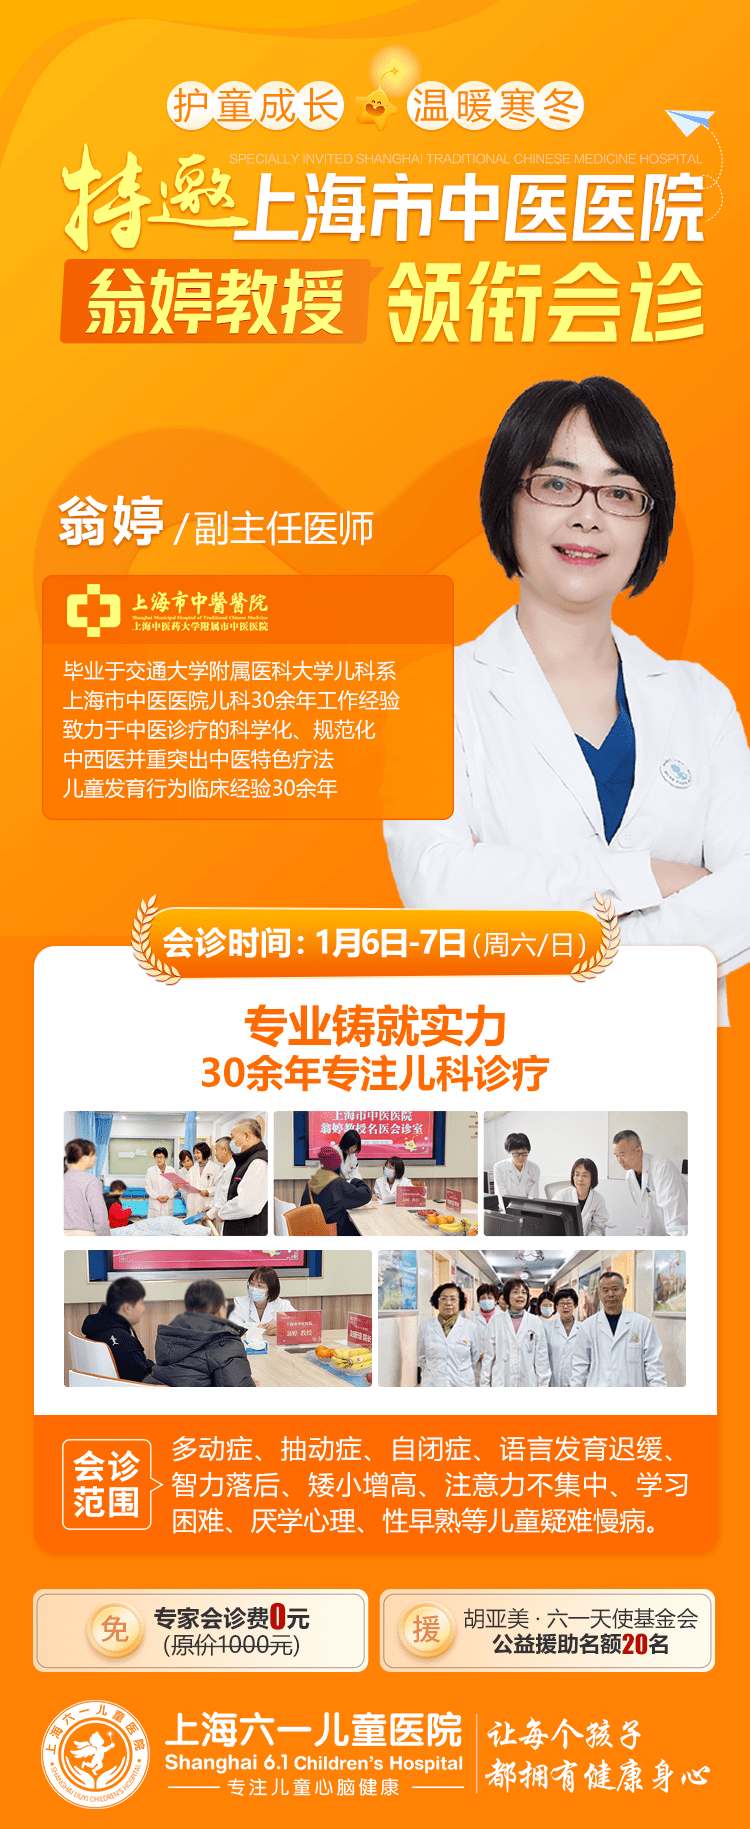 大咖来袭！上海市中医医院翁婷教授联合上海六一儿童医院开展大型专家会诊